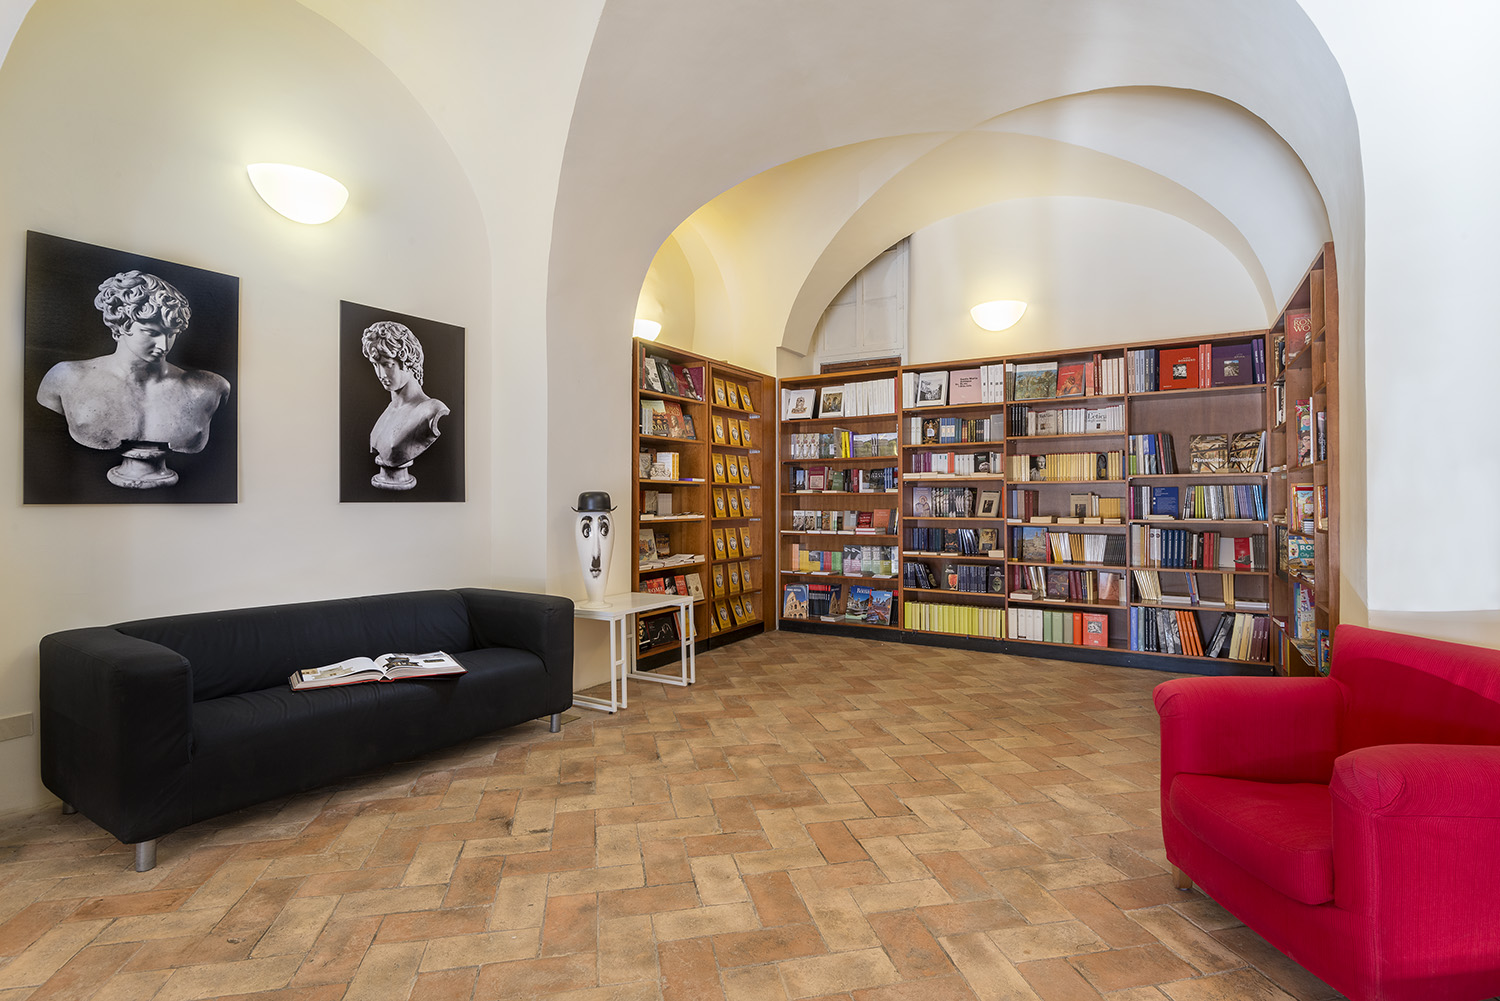 Bookshop PALAZZO ALTEMPS ©Electa. Ph. S. Castellani